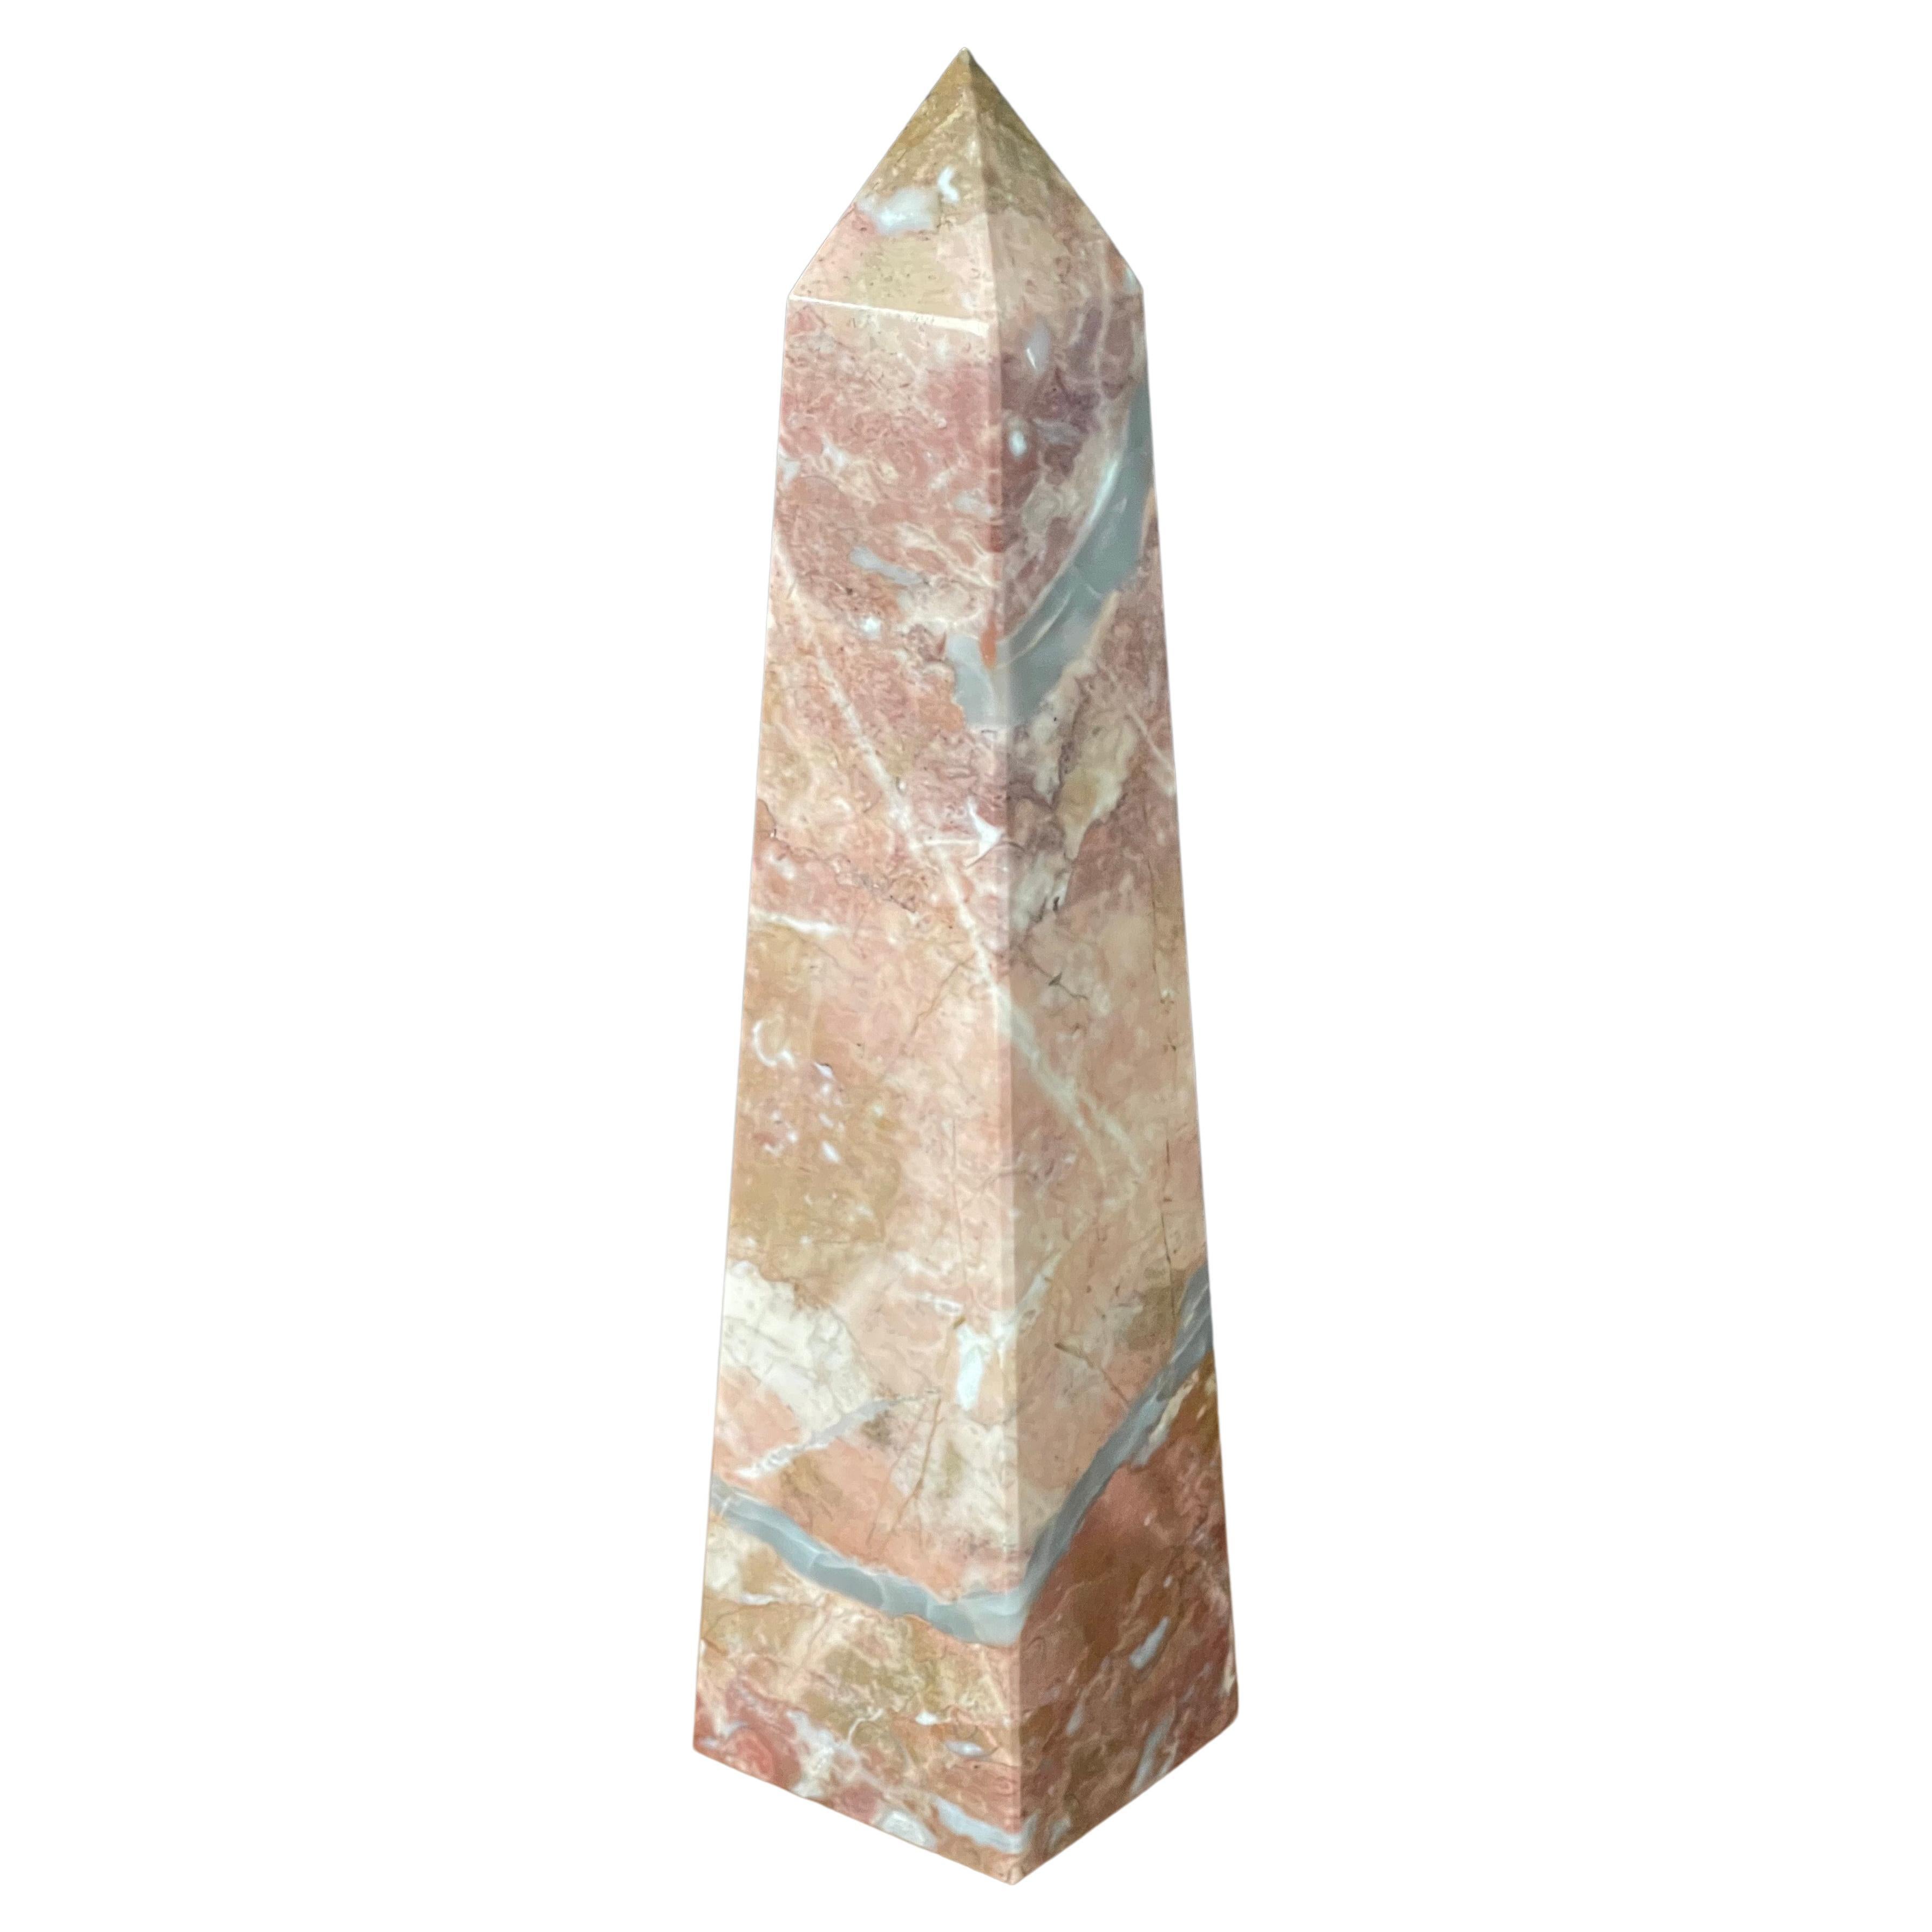 Solid Marble Decorative Obelisk For Sale